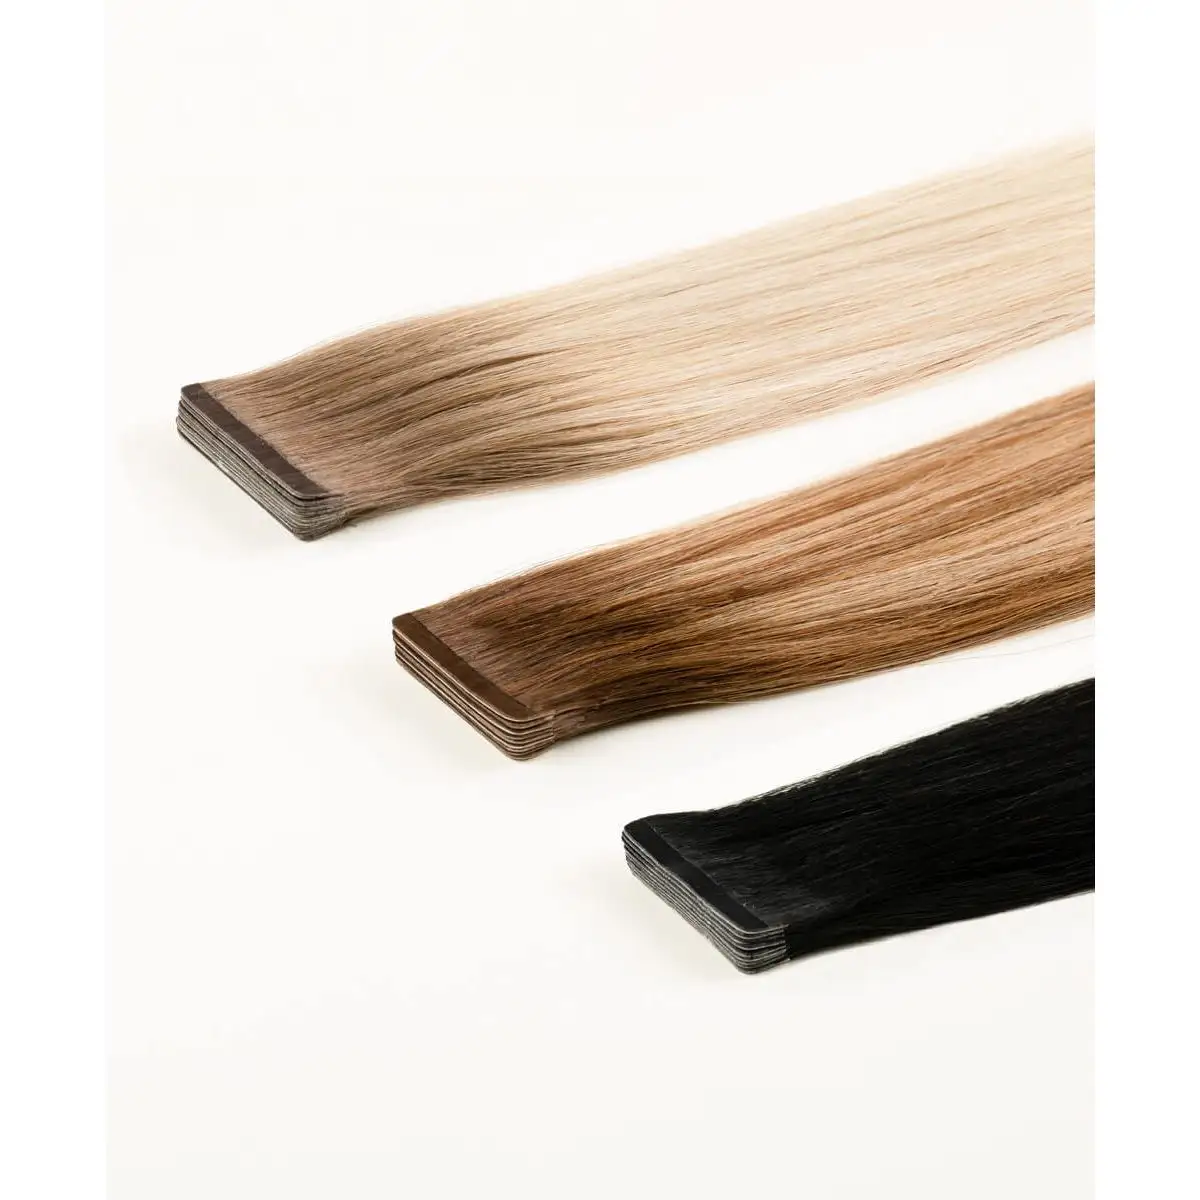 100% वर्जिन क्यूटिकल रेमी हेयर विभिन्न प्रकार के भव्य रंग के अदृश्य संकीर्ण टेप-इन बालों में उपलब्ध हैं